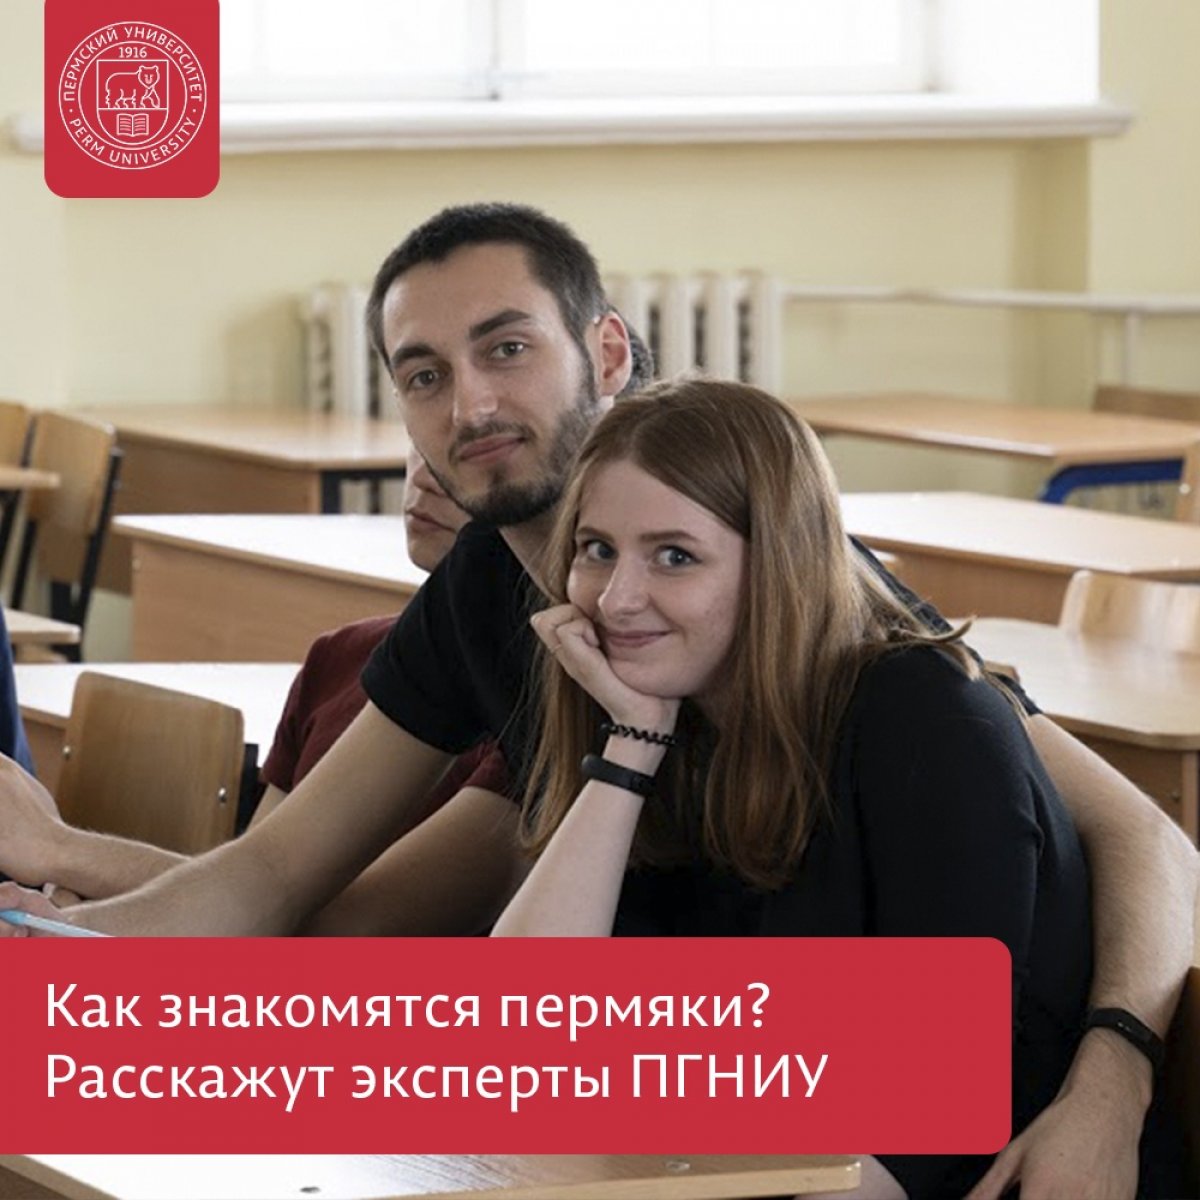 Эксперты Пермского университета выступят в Часовом заводе